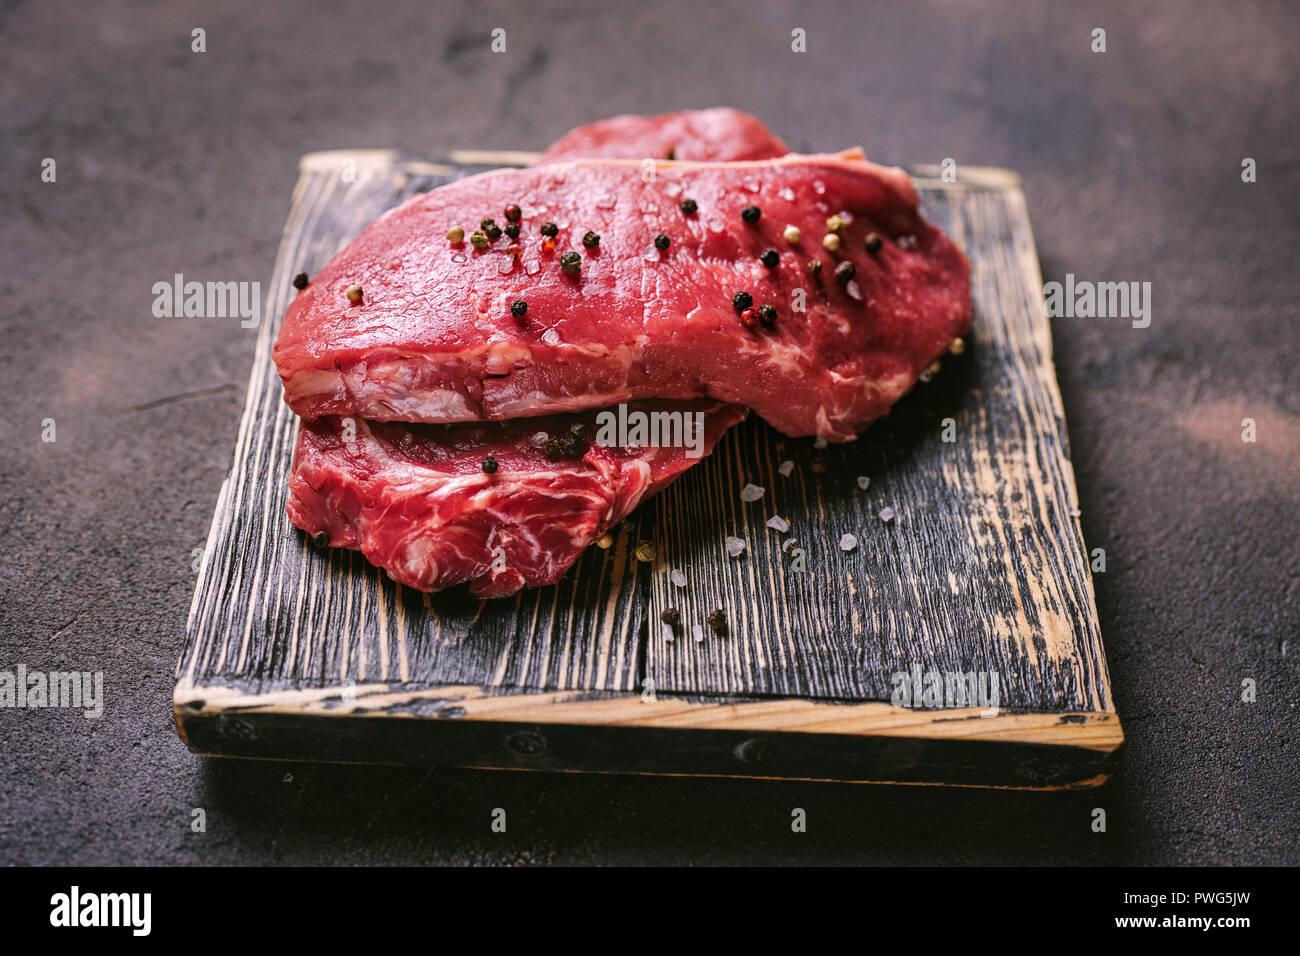 In Der Nahe Von Zwei Stucke Von Beaf Steak Auf Dem Holzbrett Copa Raum Stockfotografie Alamy